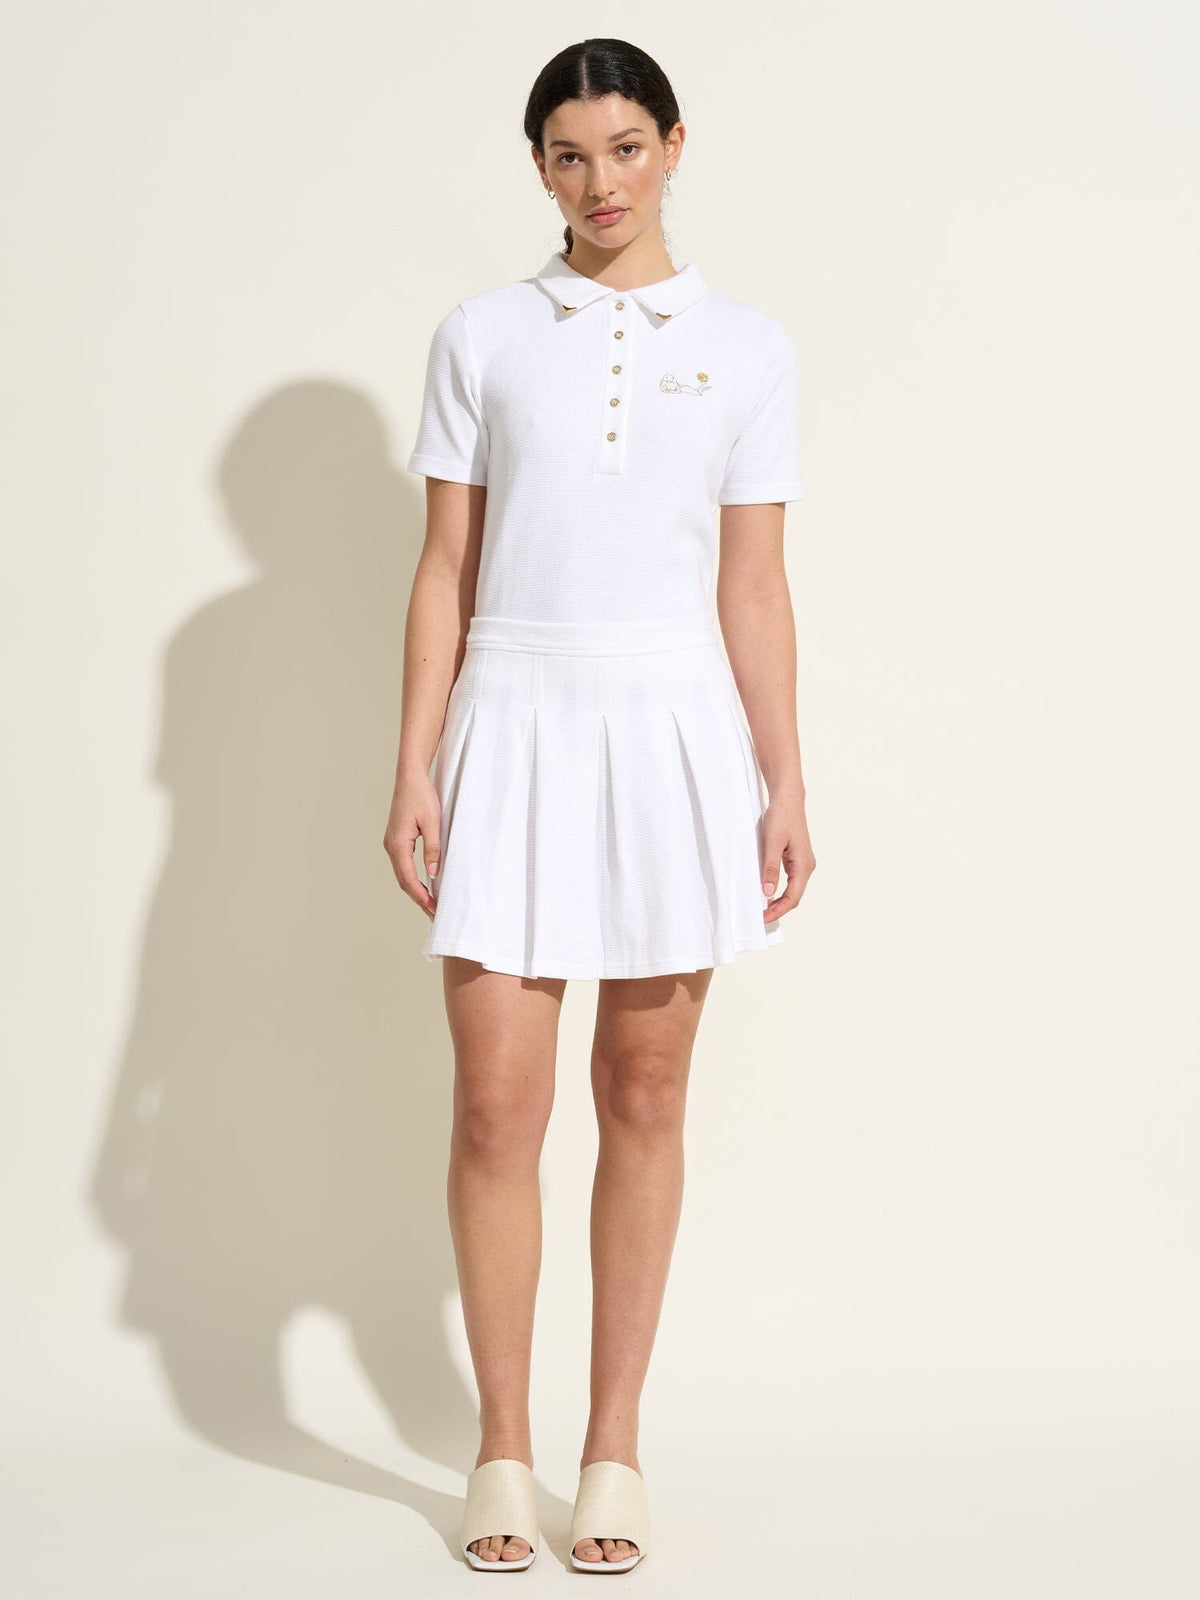 STEFFIE - Mini jupe plissée style tennis brodée en jersey piqué de coton organique Blanc Jupe Fête Impériale